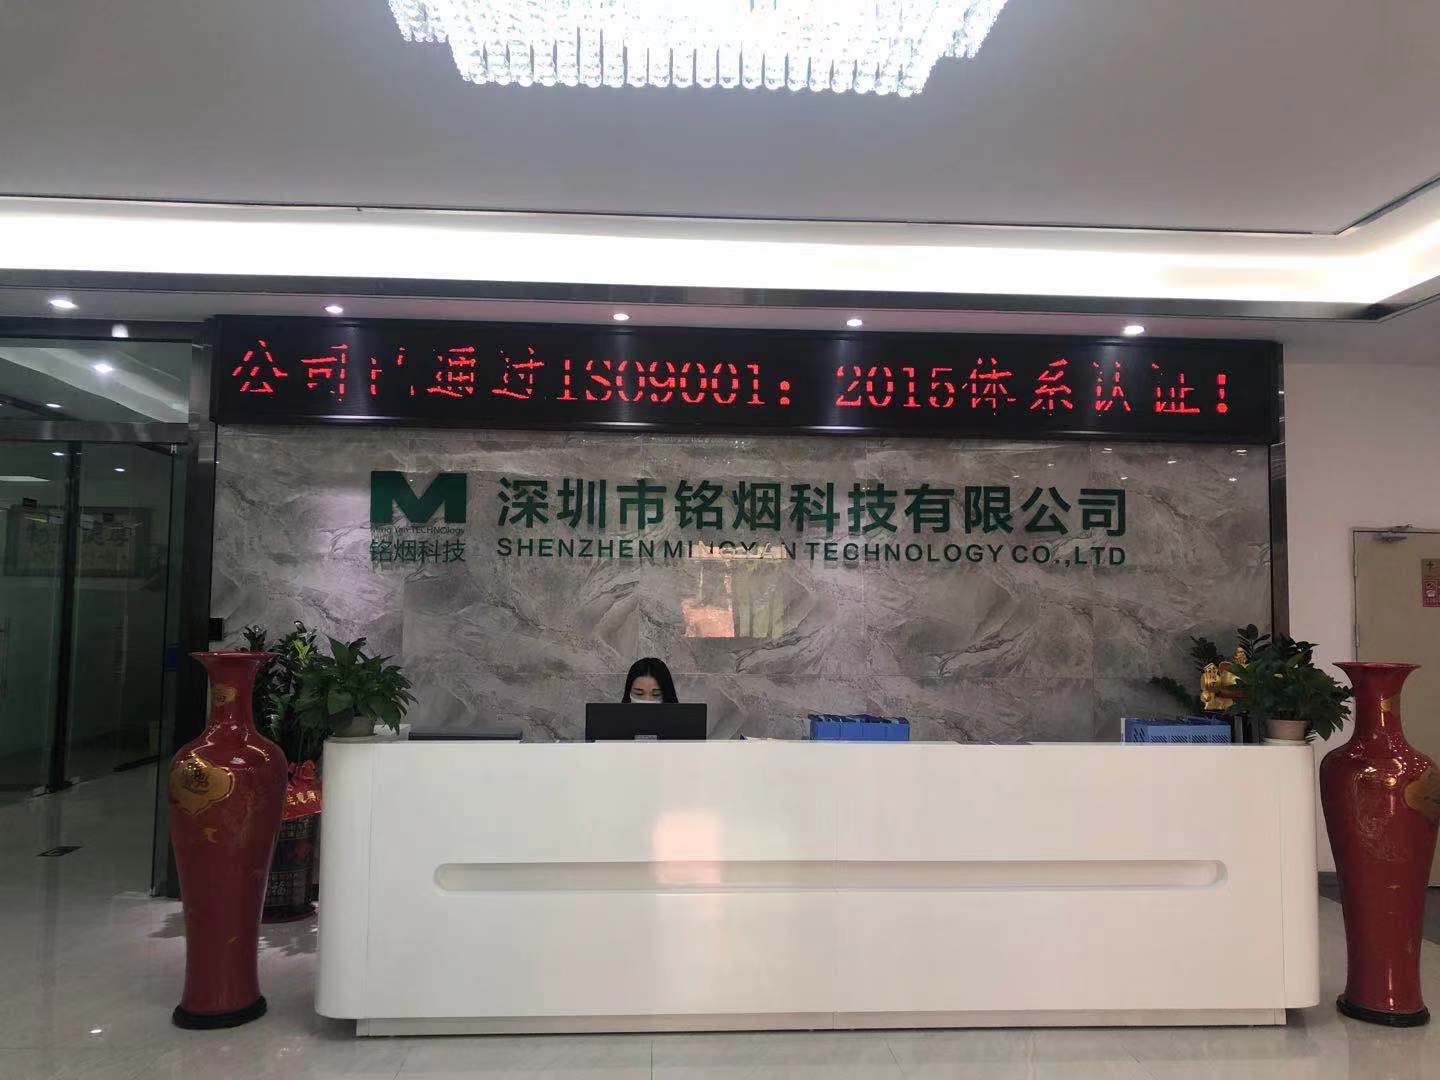 祝贺深圳市铭烟科技有限公司顺利通过GMP820认证审核